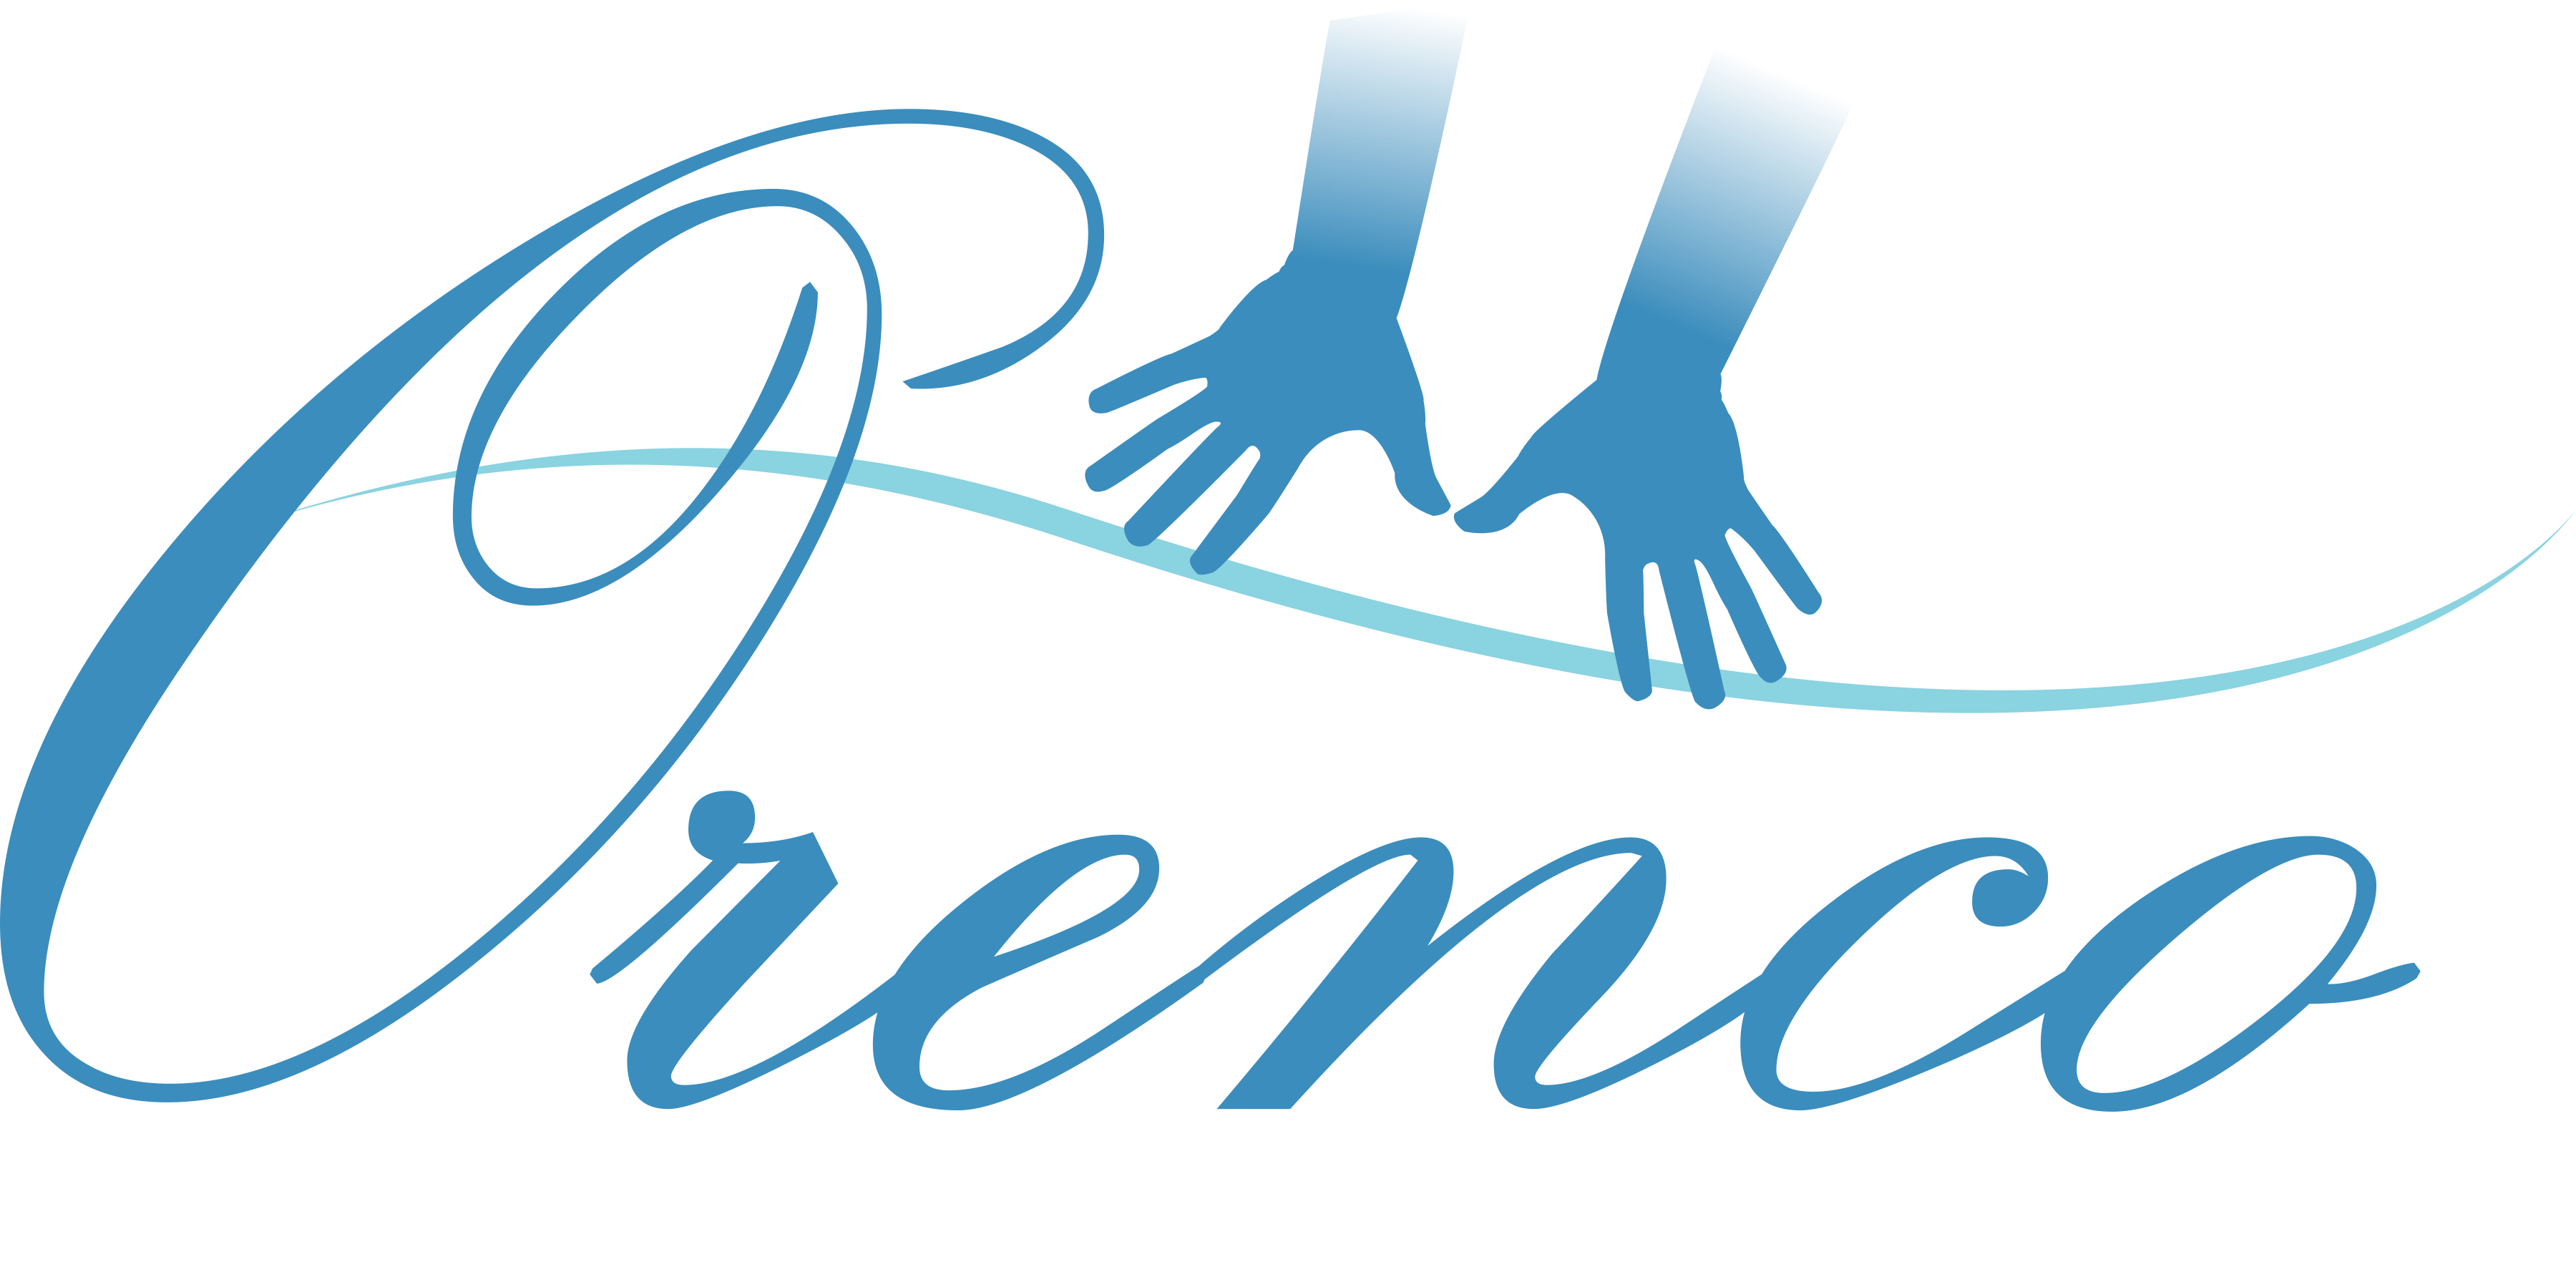 Orenco Massage Studio